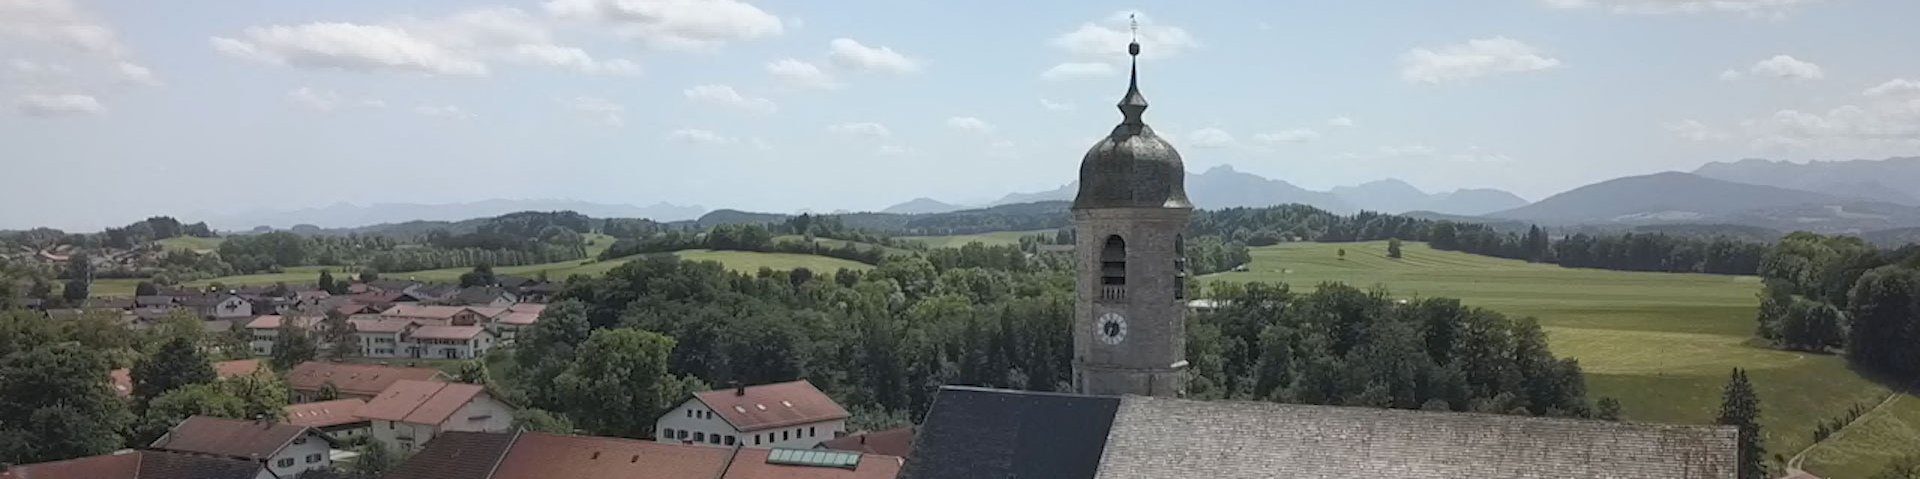 Kirchturm mit Alpen im Hintergrund